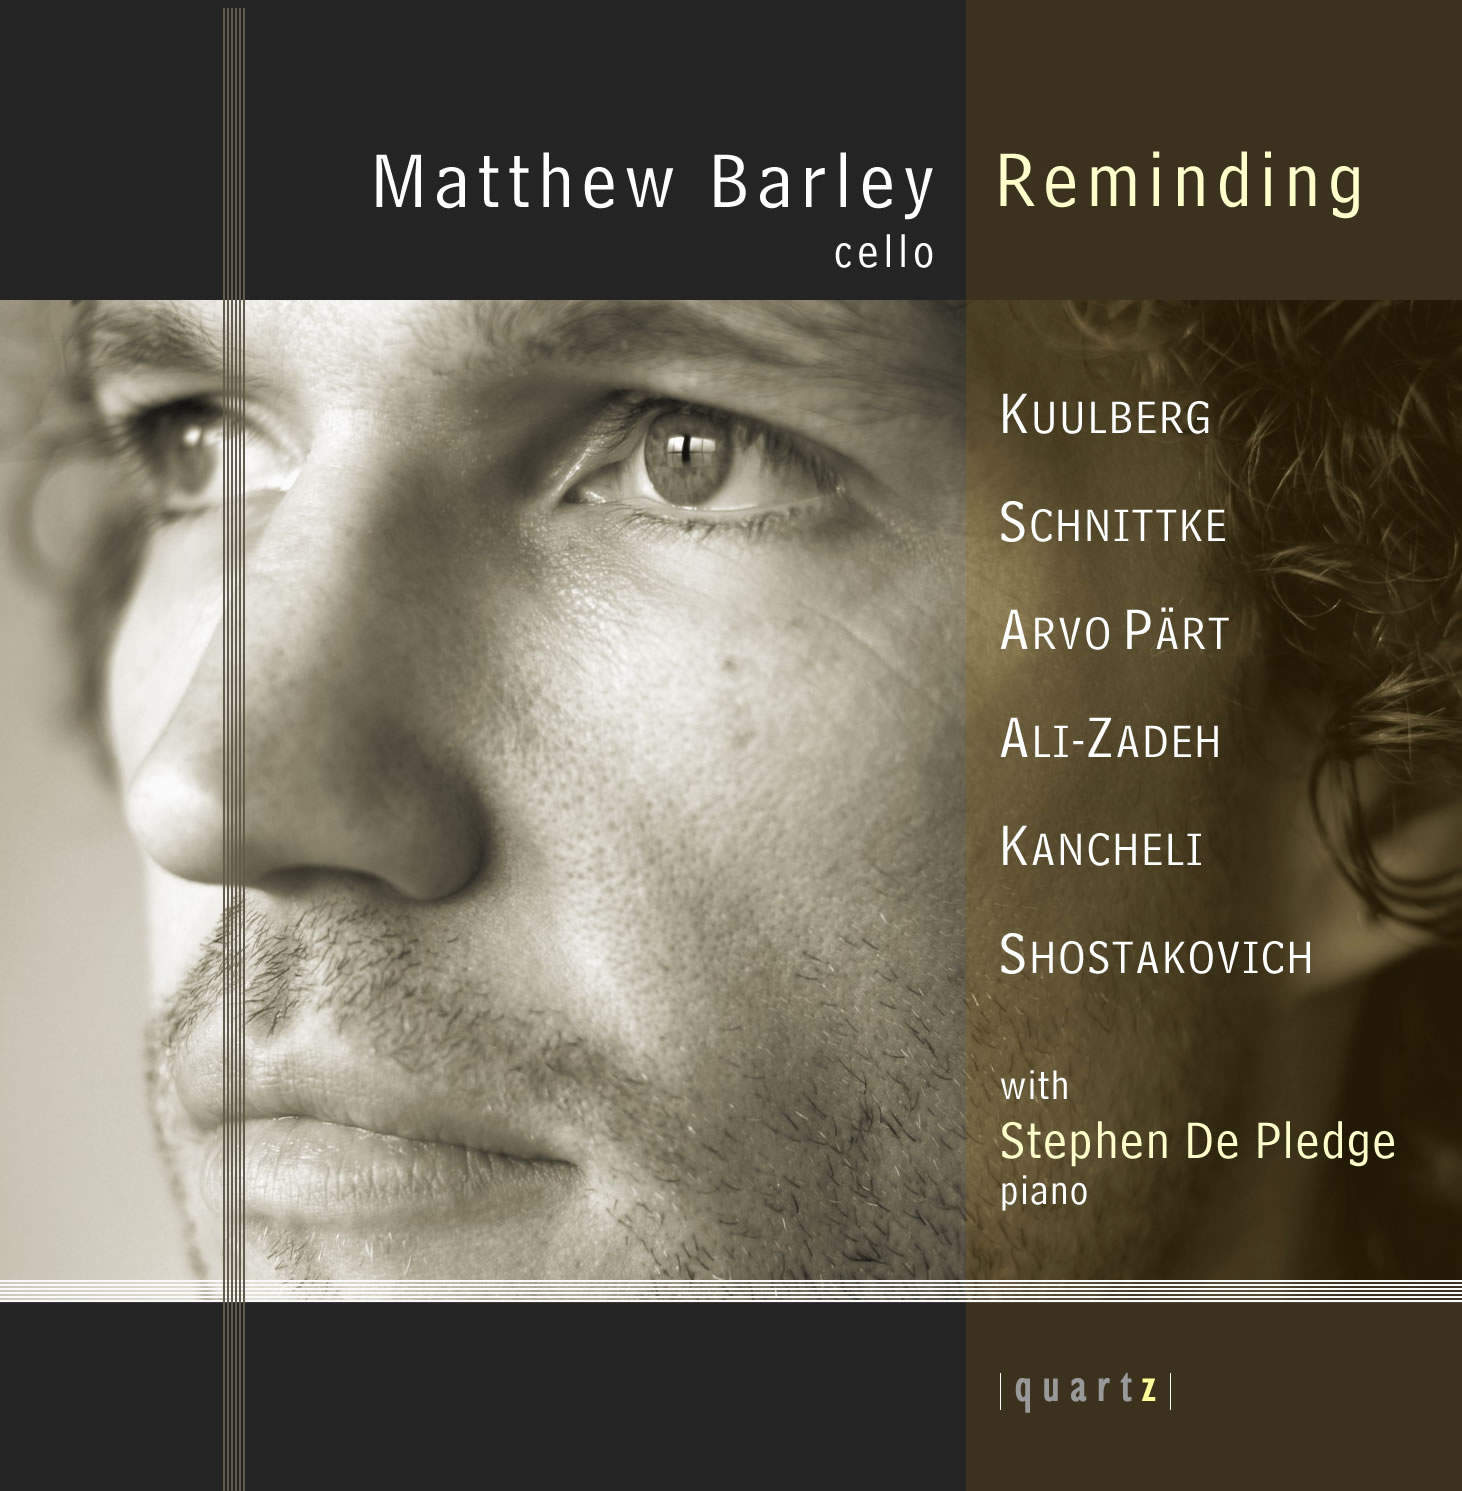 Matthew Barley (cello) and Stephen De Pledge (piano)